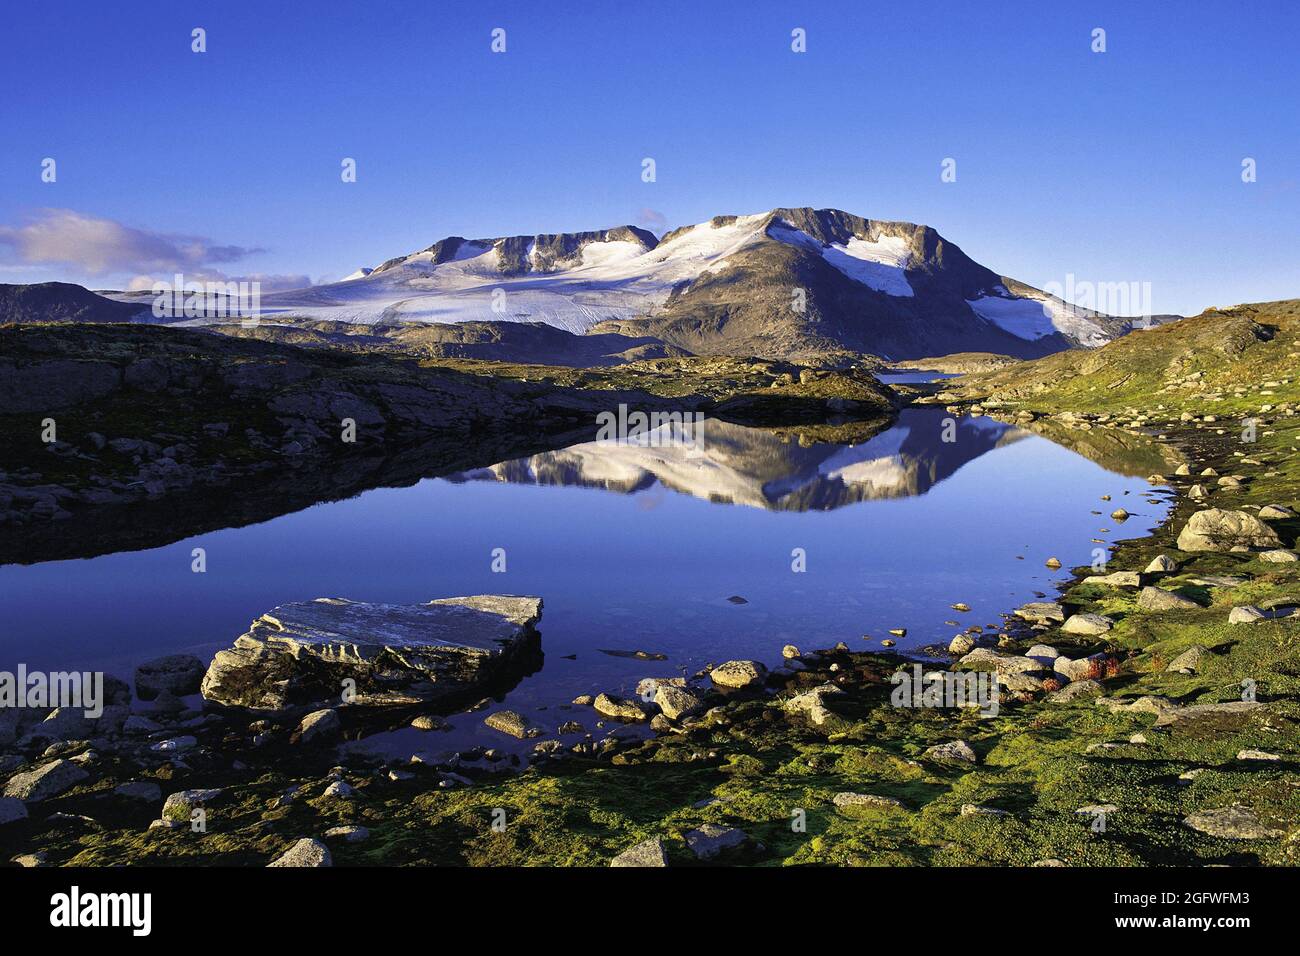 Le cime e i ghiacciai di Fannaraken si riflettono in un laghetto di acqua sciolta, Norvegia, Parco Nazionale di Jotunheimen, Fannaraken Foto Stock